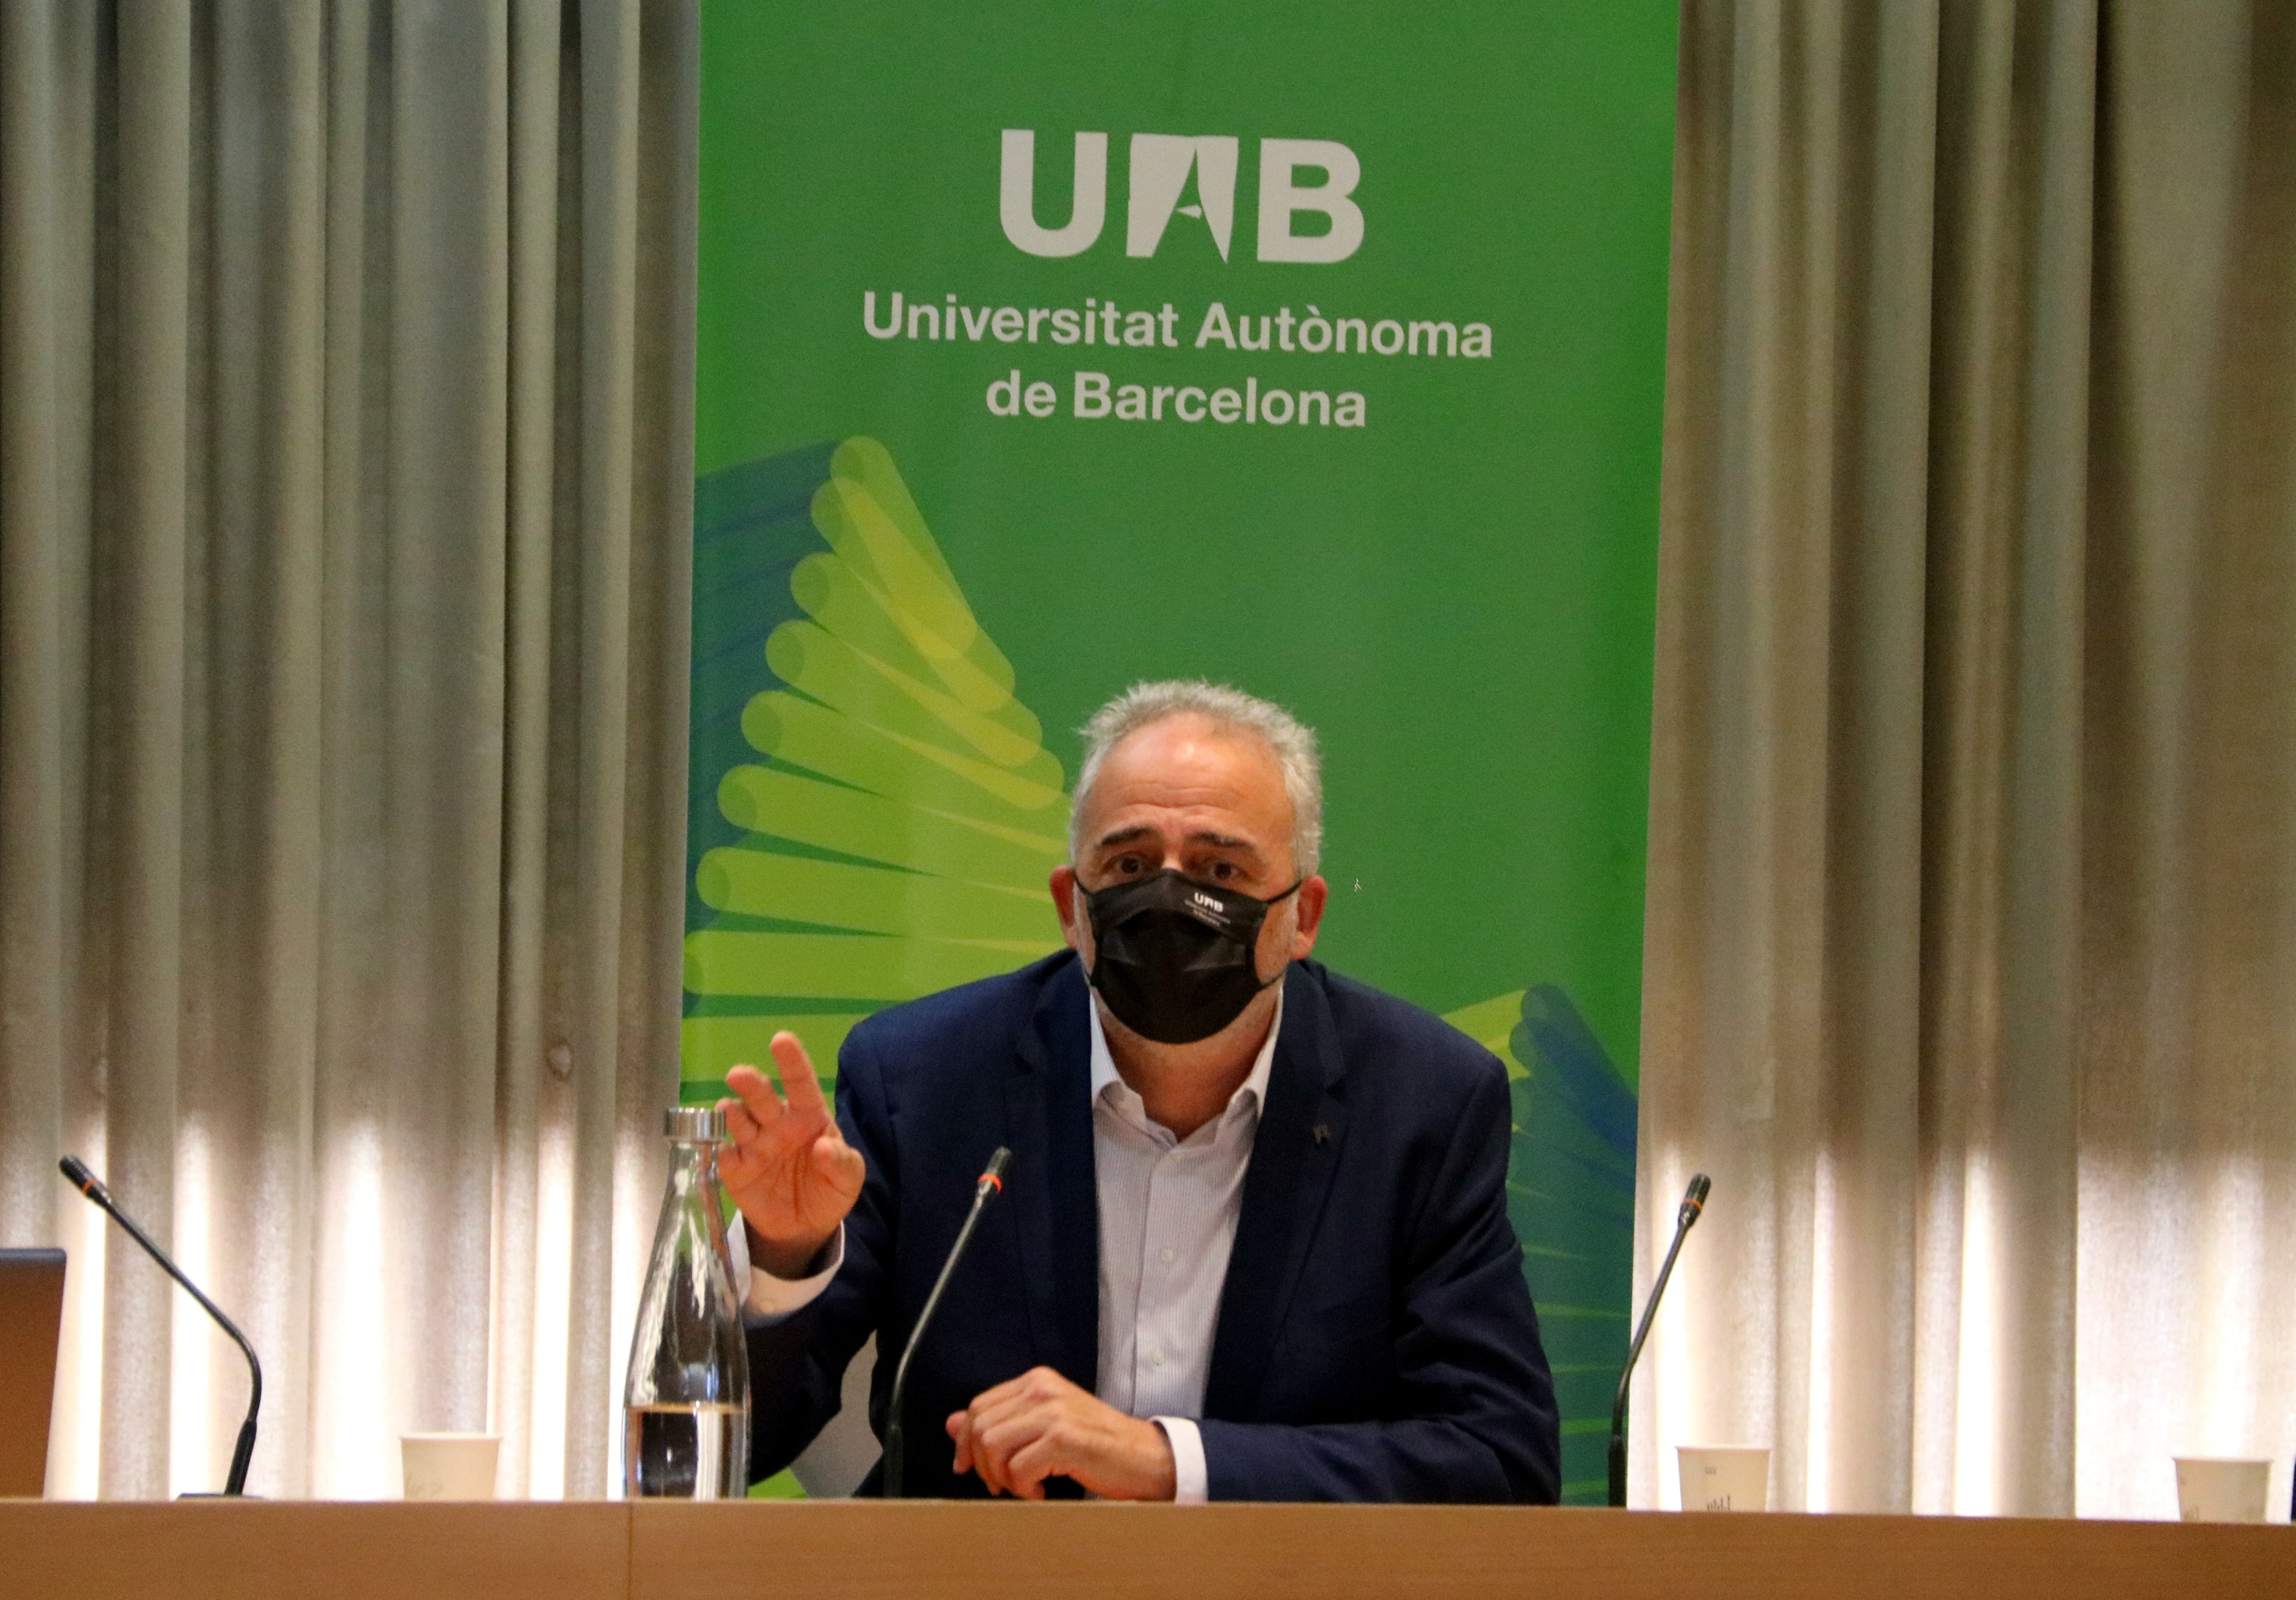 Ciberataque UAB: la universidad no tiene constancia de ninguna extracción de datos